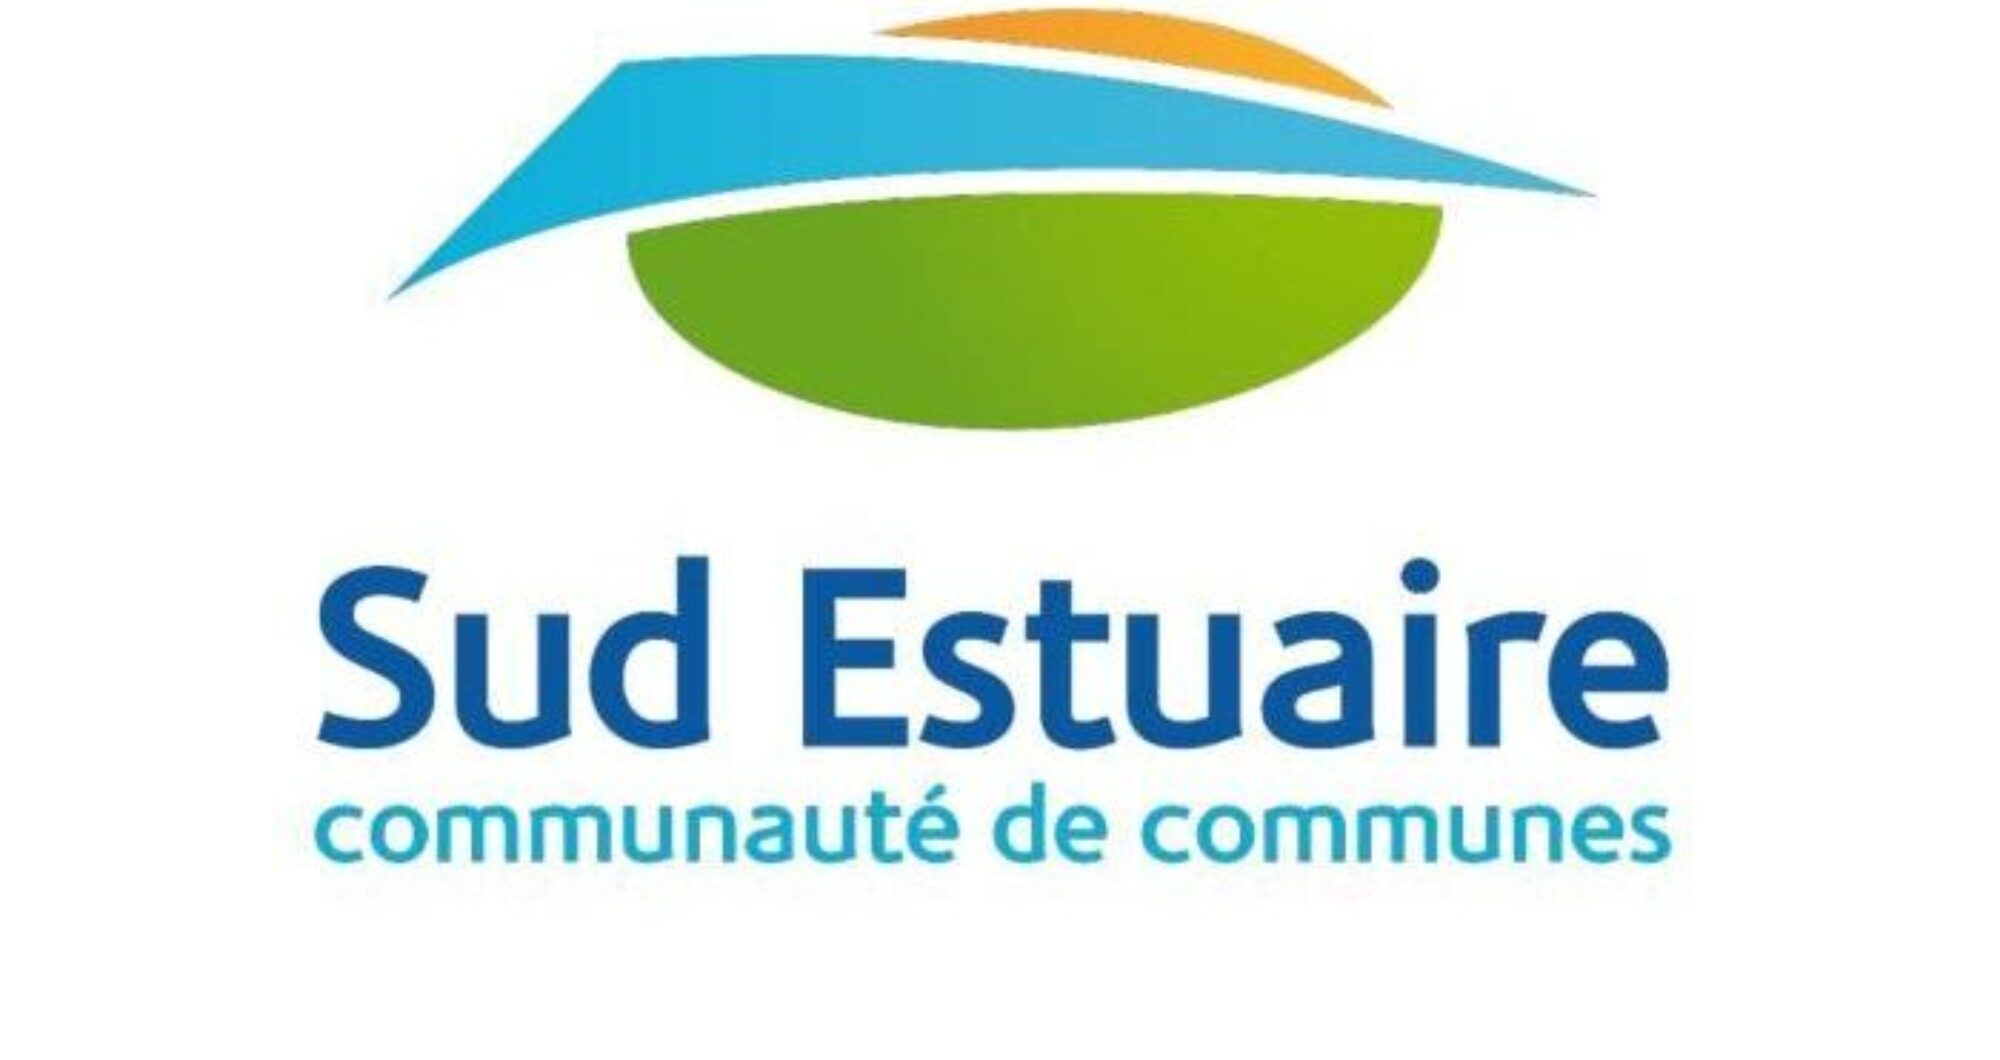 Logos de la communauté de communes Sud Estuaire